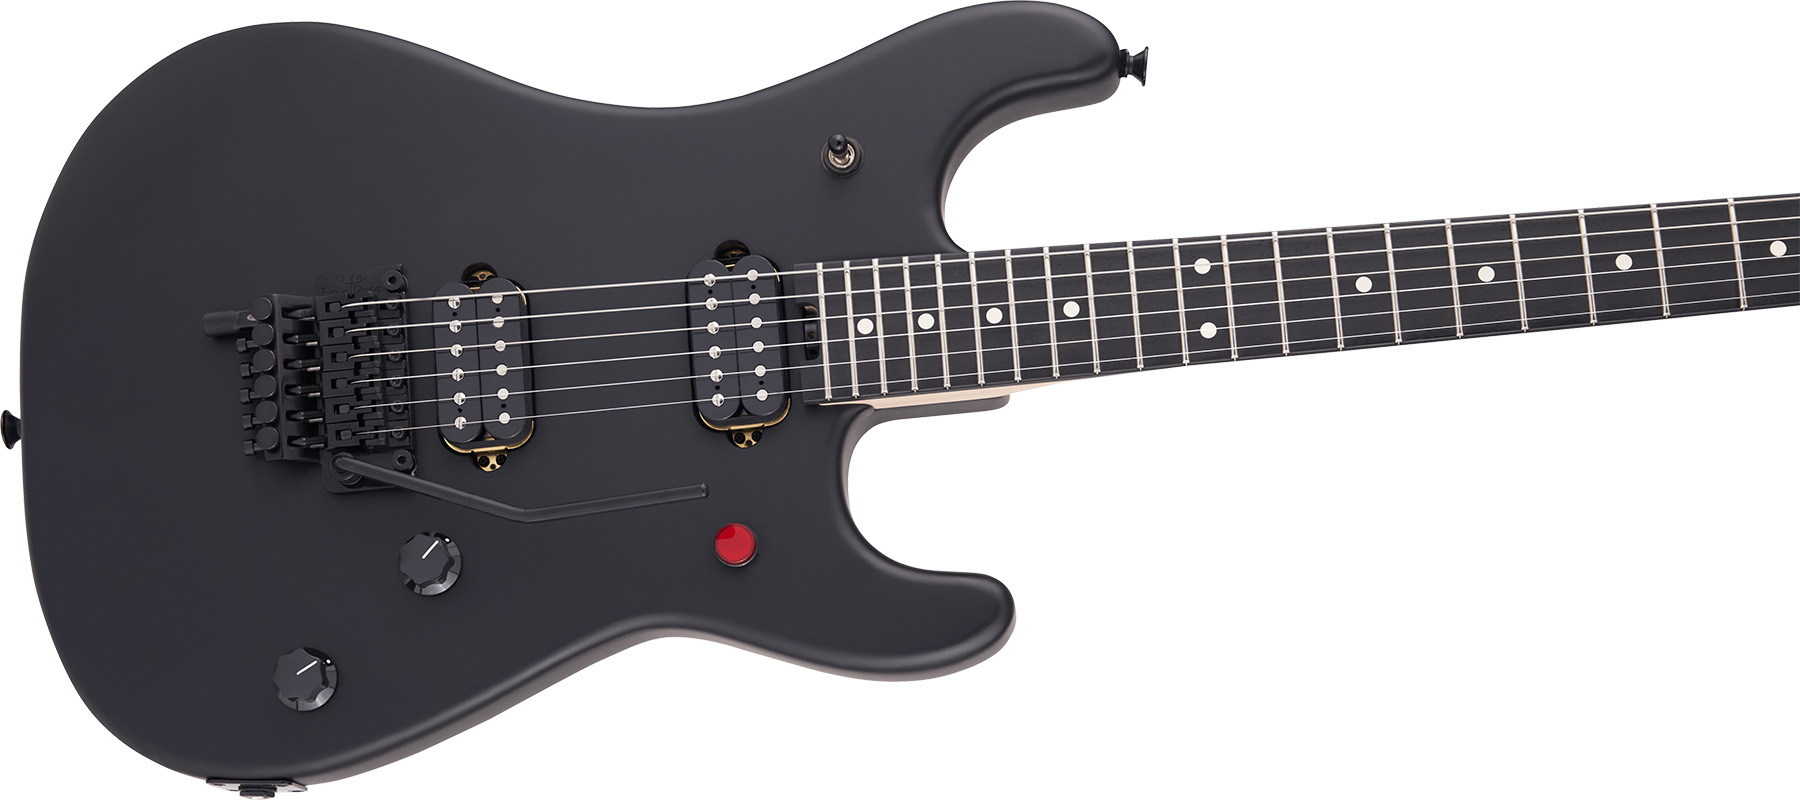 Evh 5150 Standard Mex 2h Fr Eb - Stealth Black - Str shape electric guitar - Variation 2